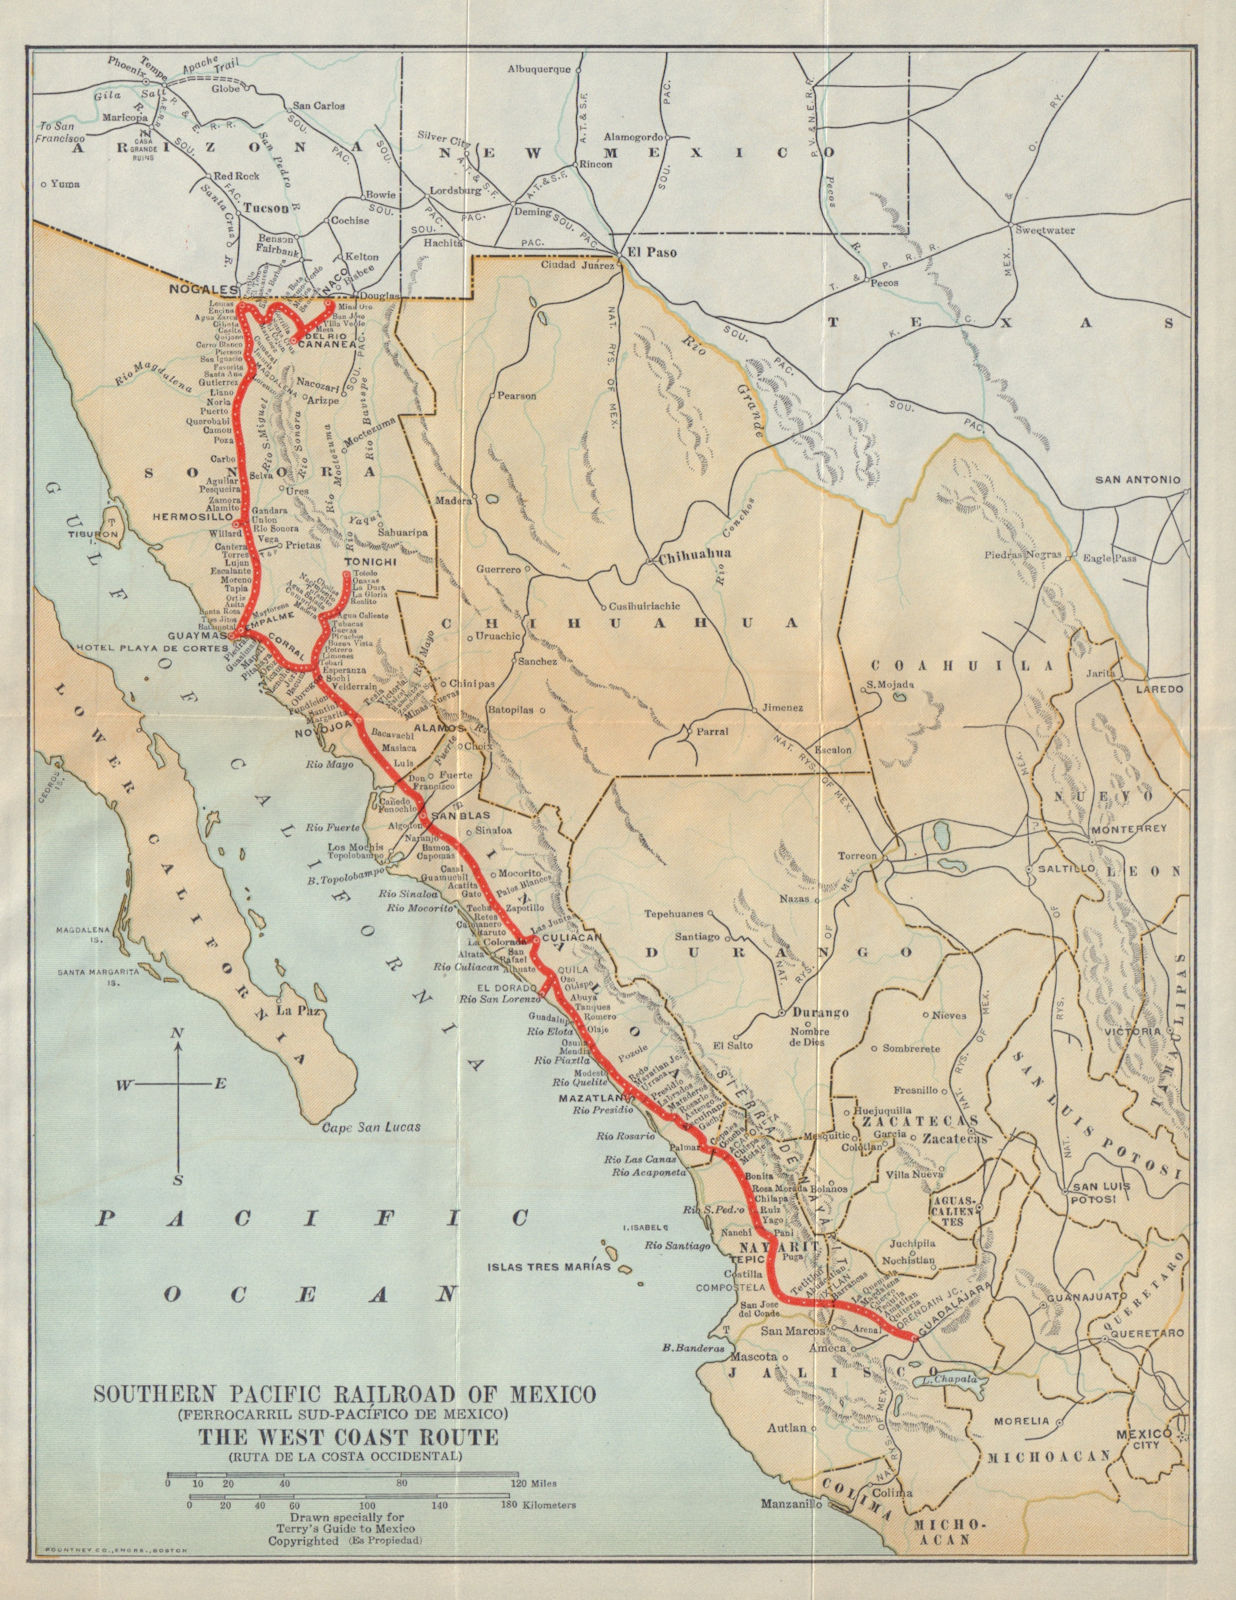 Southern Pacific Railroad / Ferrocarril Sud-Pacifico de Mexico 1938 old map